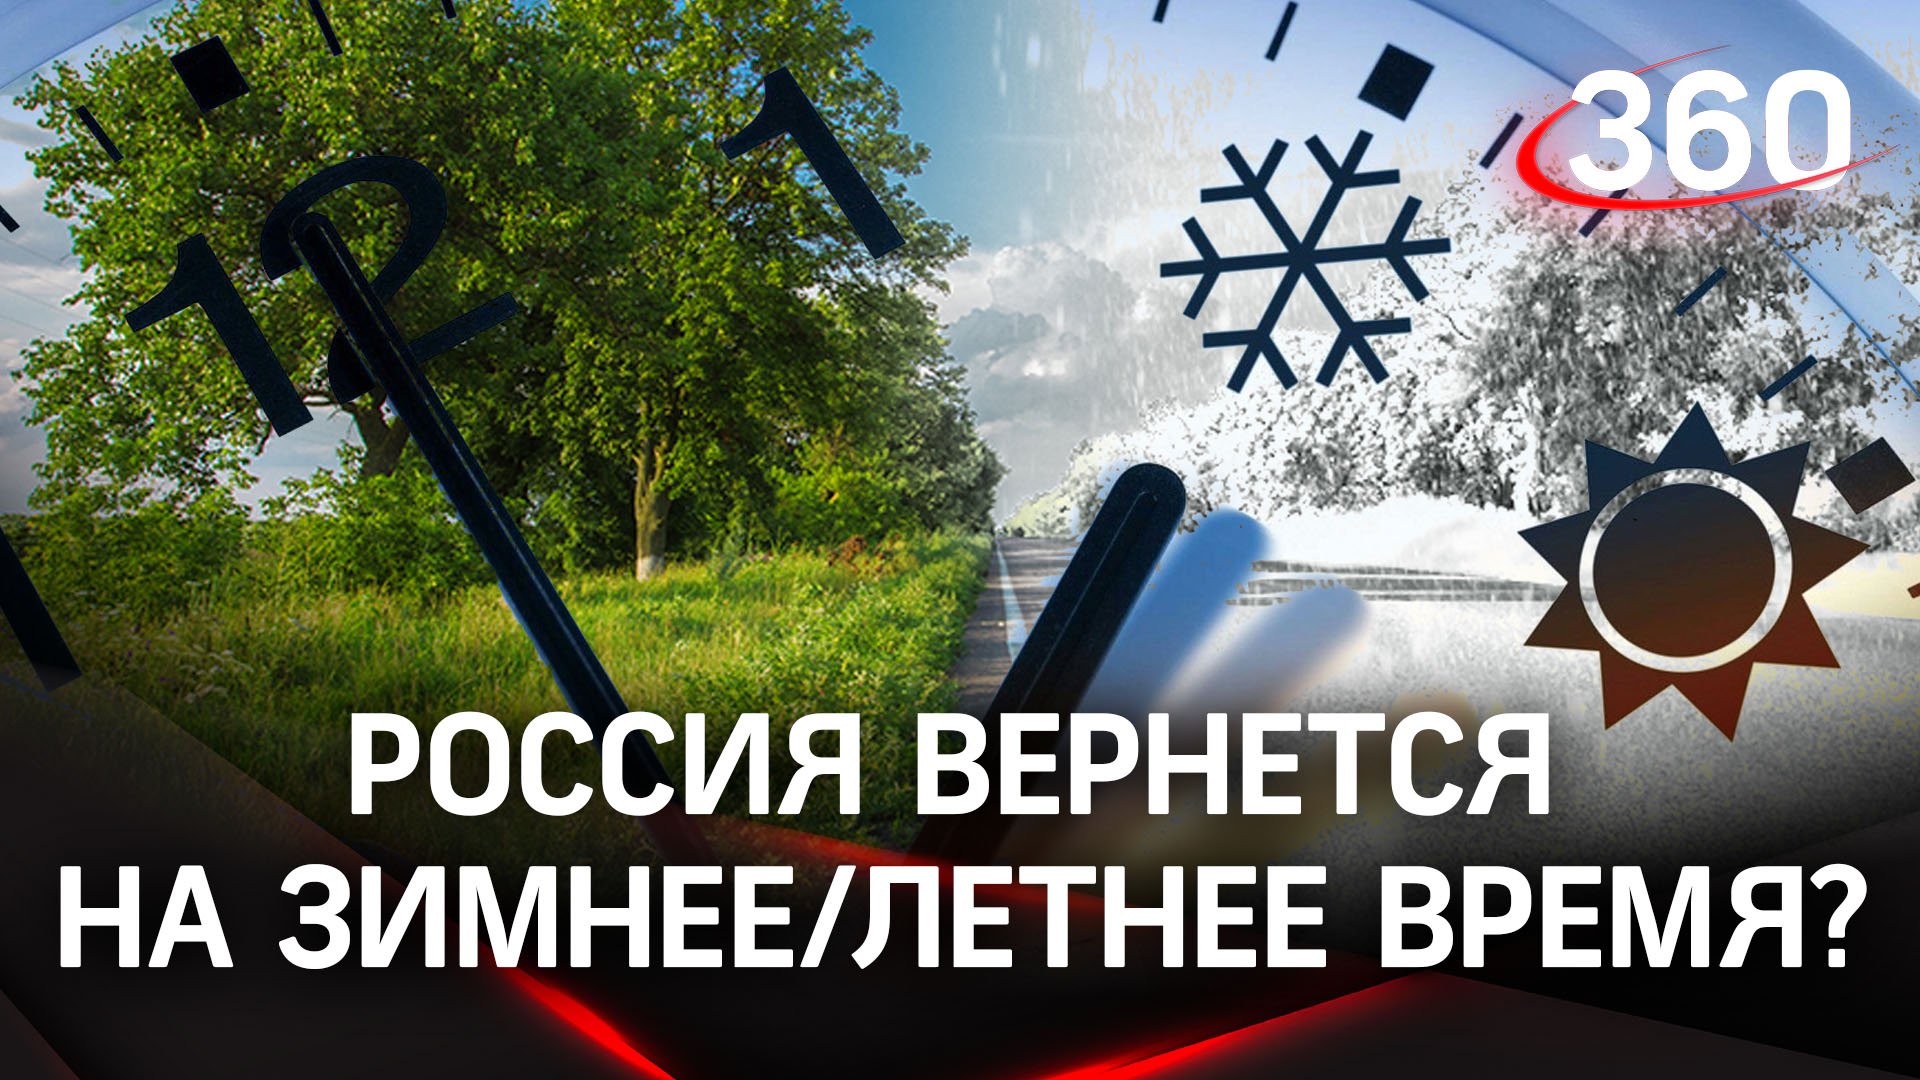 Россия вернется к переходу на зимнее/летнее время - законопроект внесен в Госдуму